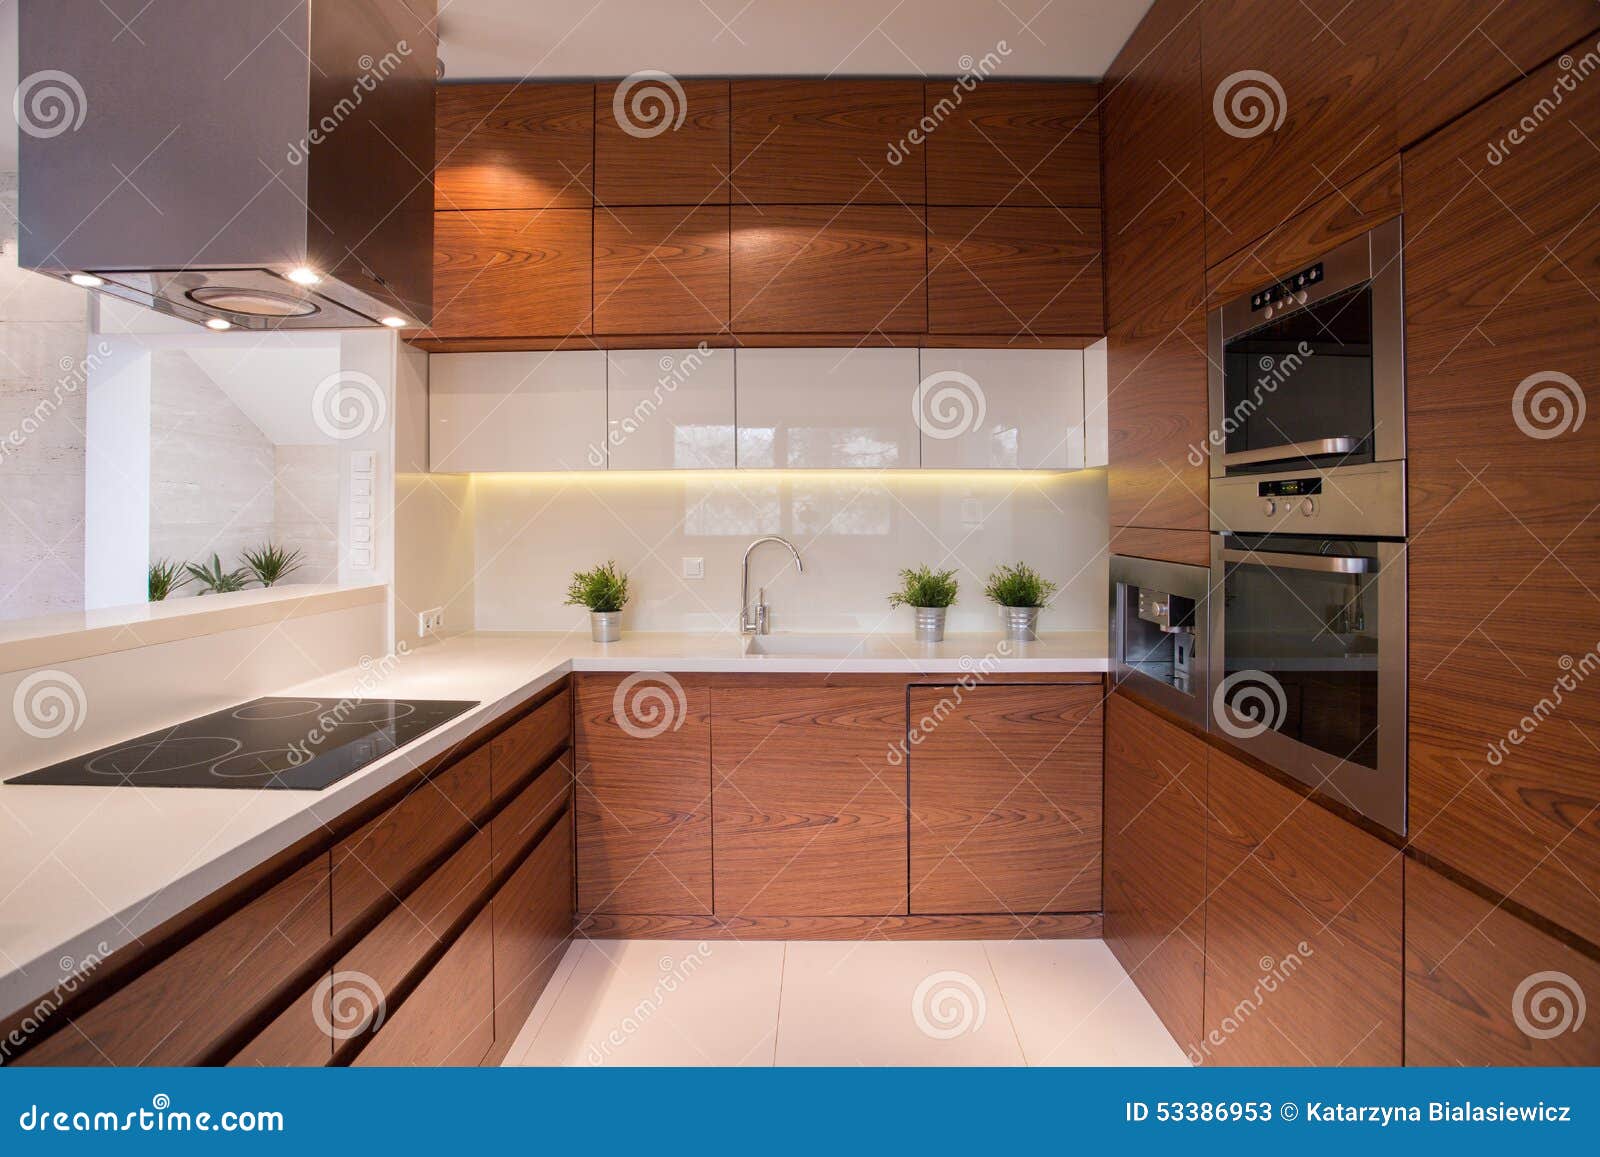 wooden kitchen cabinet